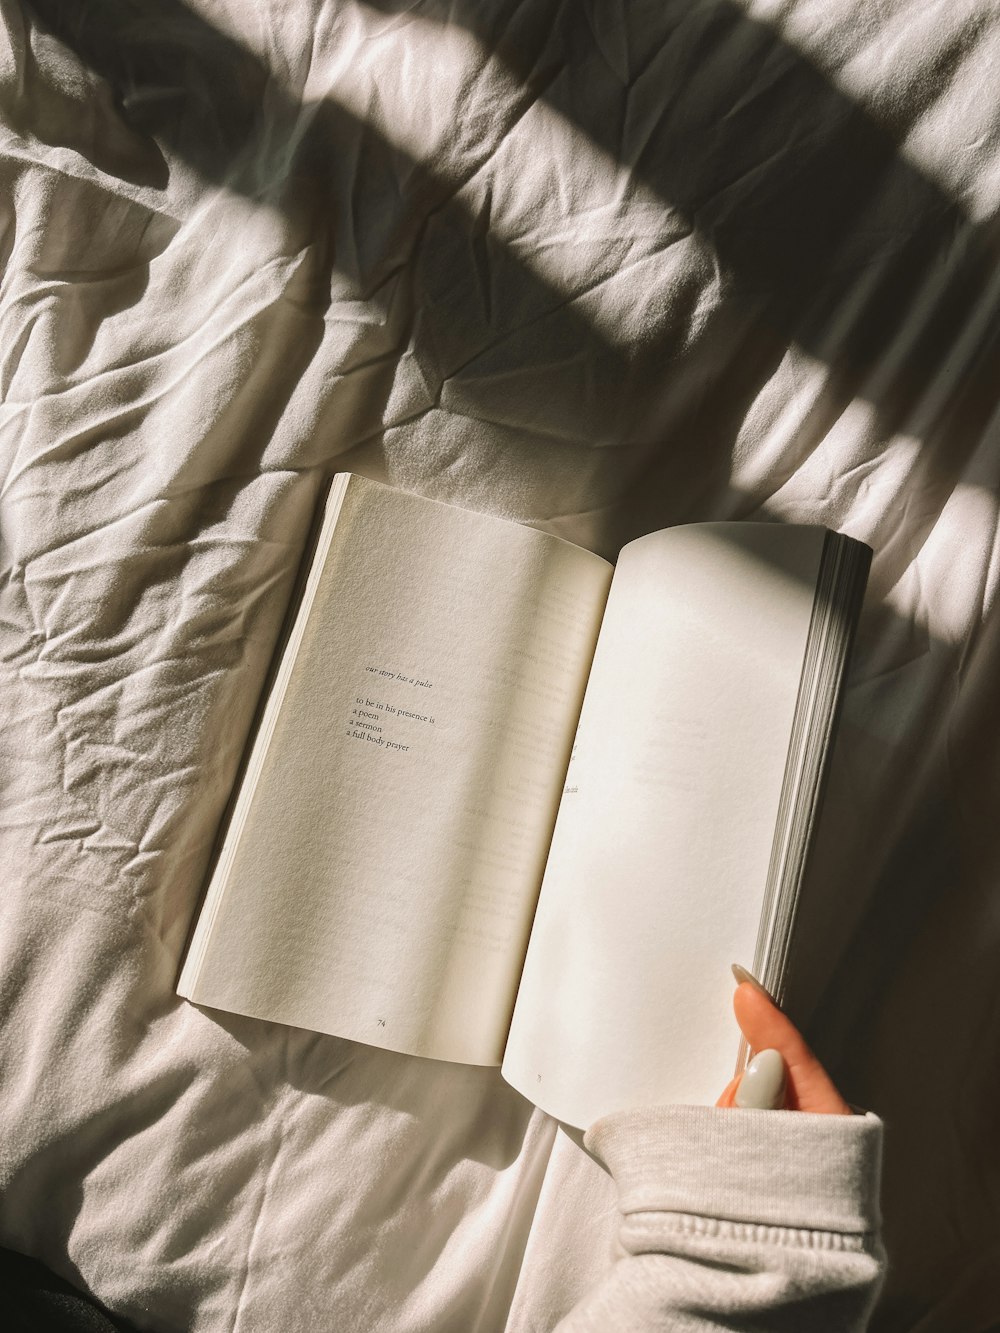 Una persona sta leggendo un libro su un letto